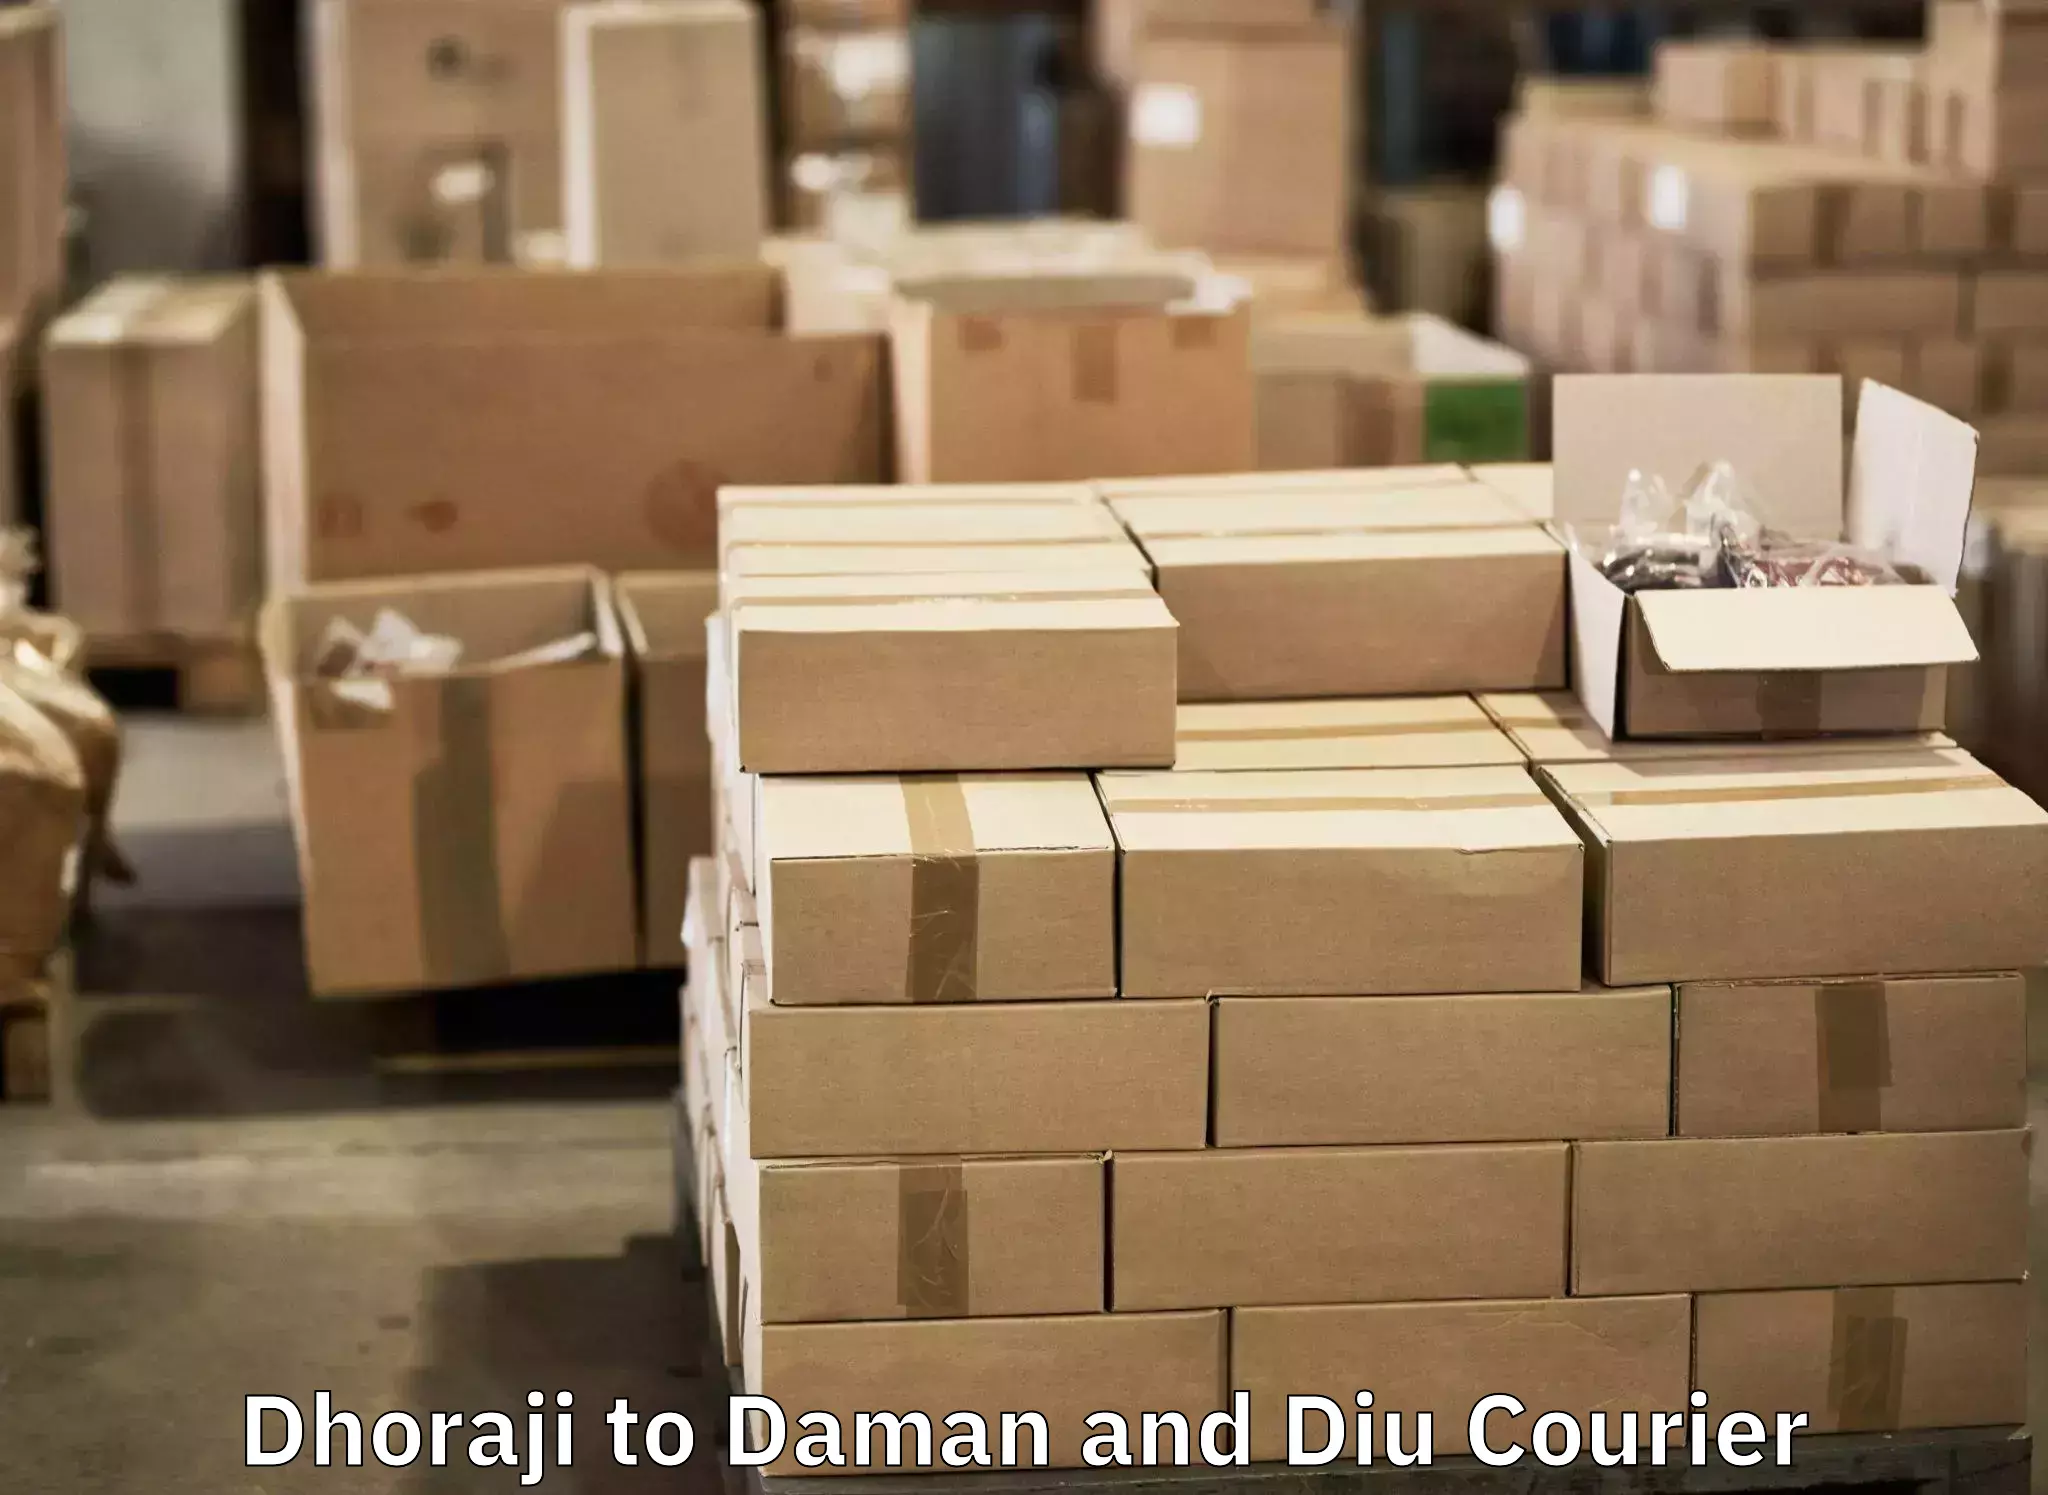 Efficient luggage delivery Dhoraji to Diu